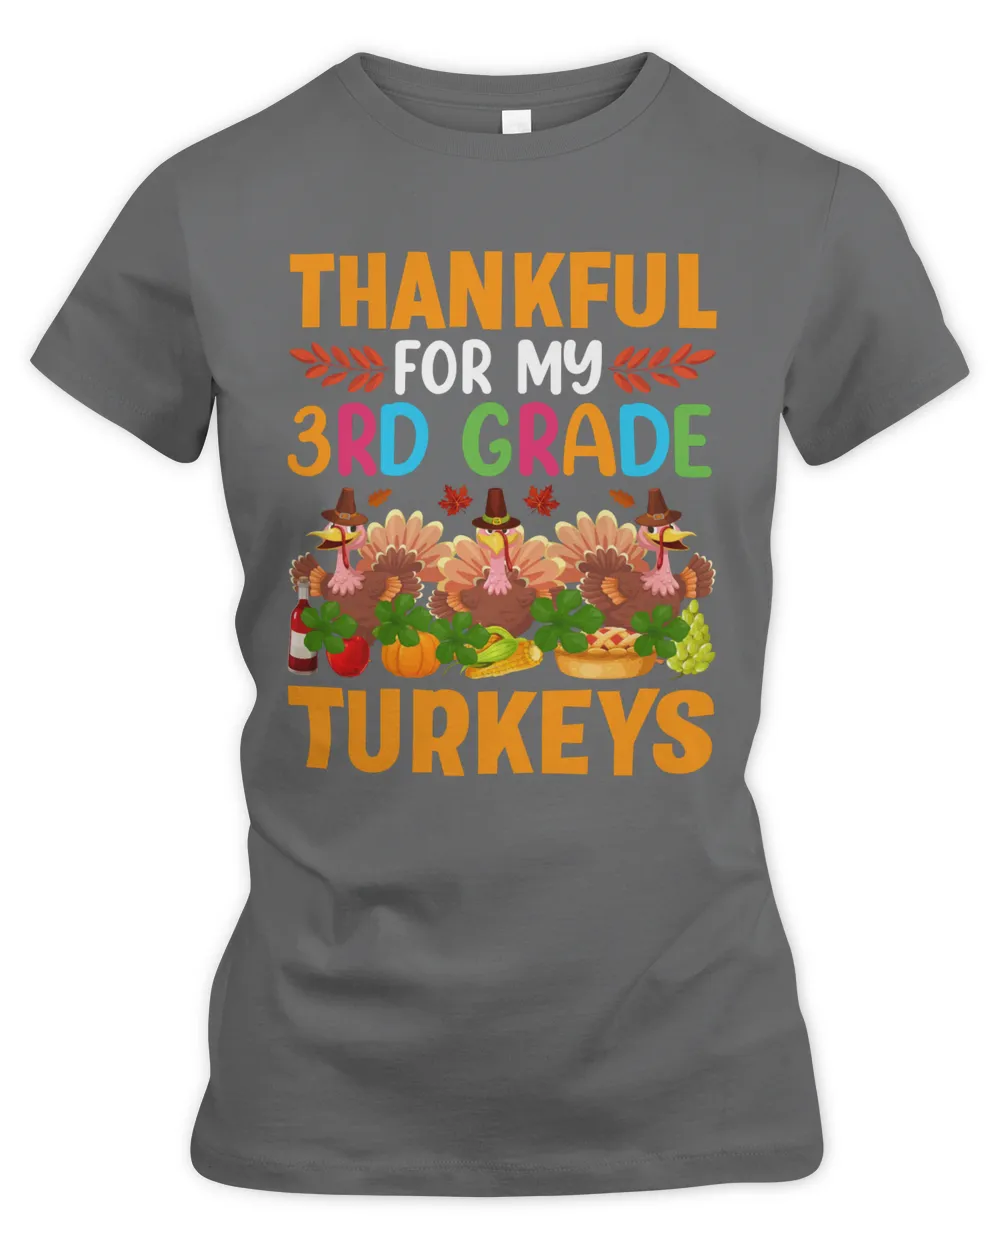 Thankful for my 3rd grade turkeys